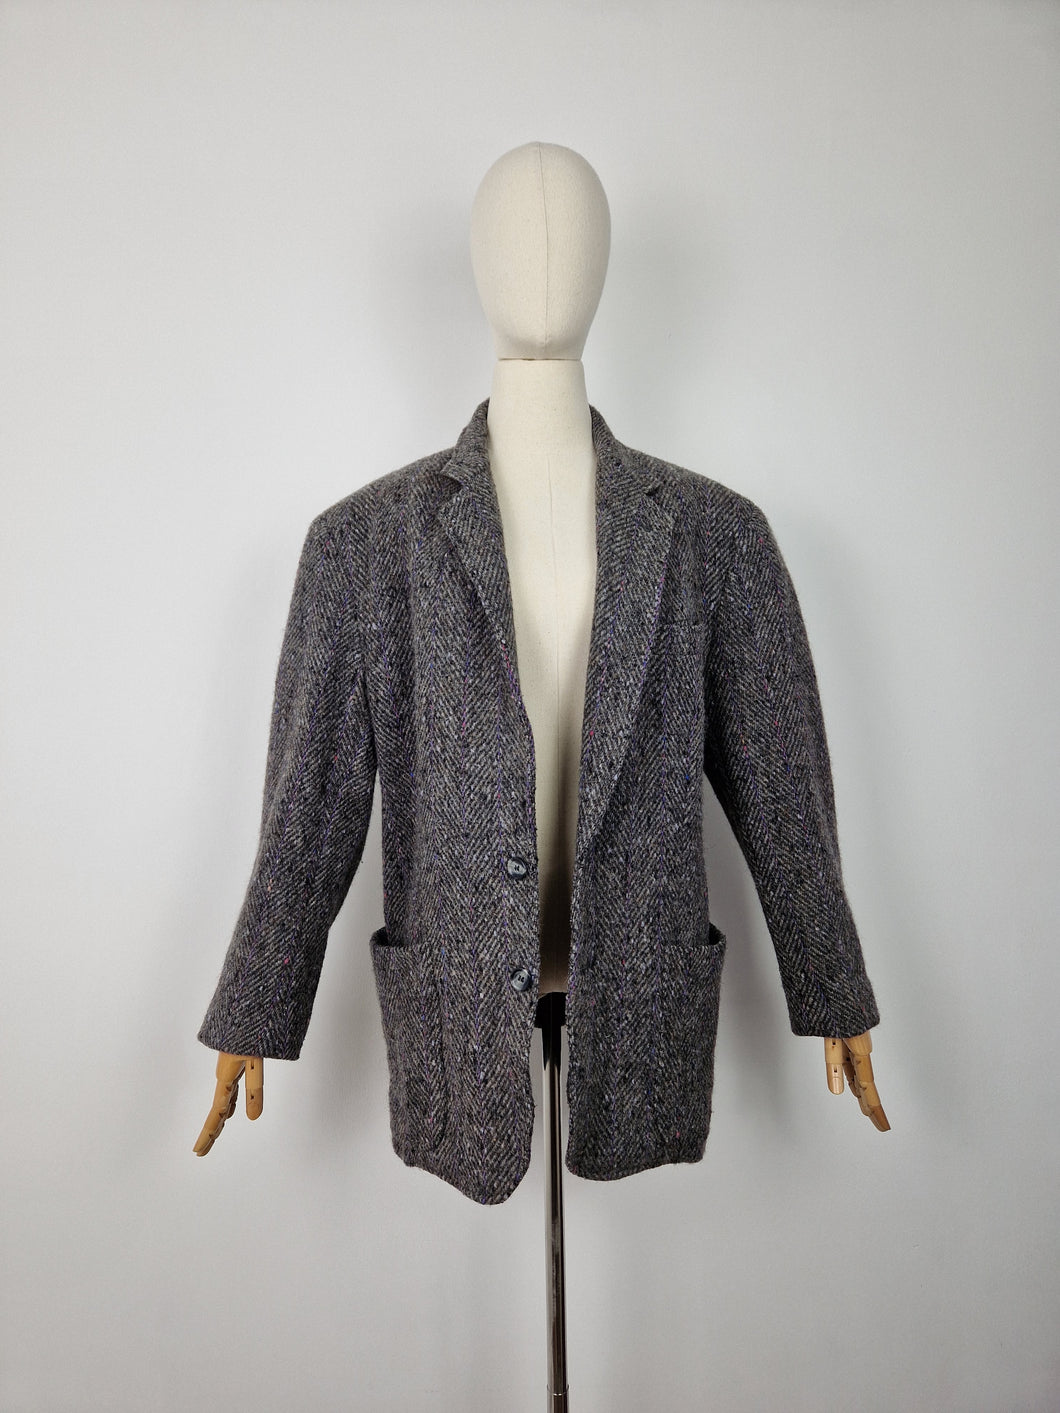 Vintage Valentino men's wool blazer